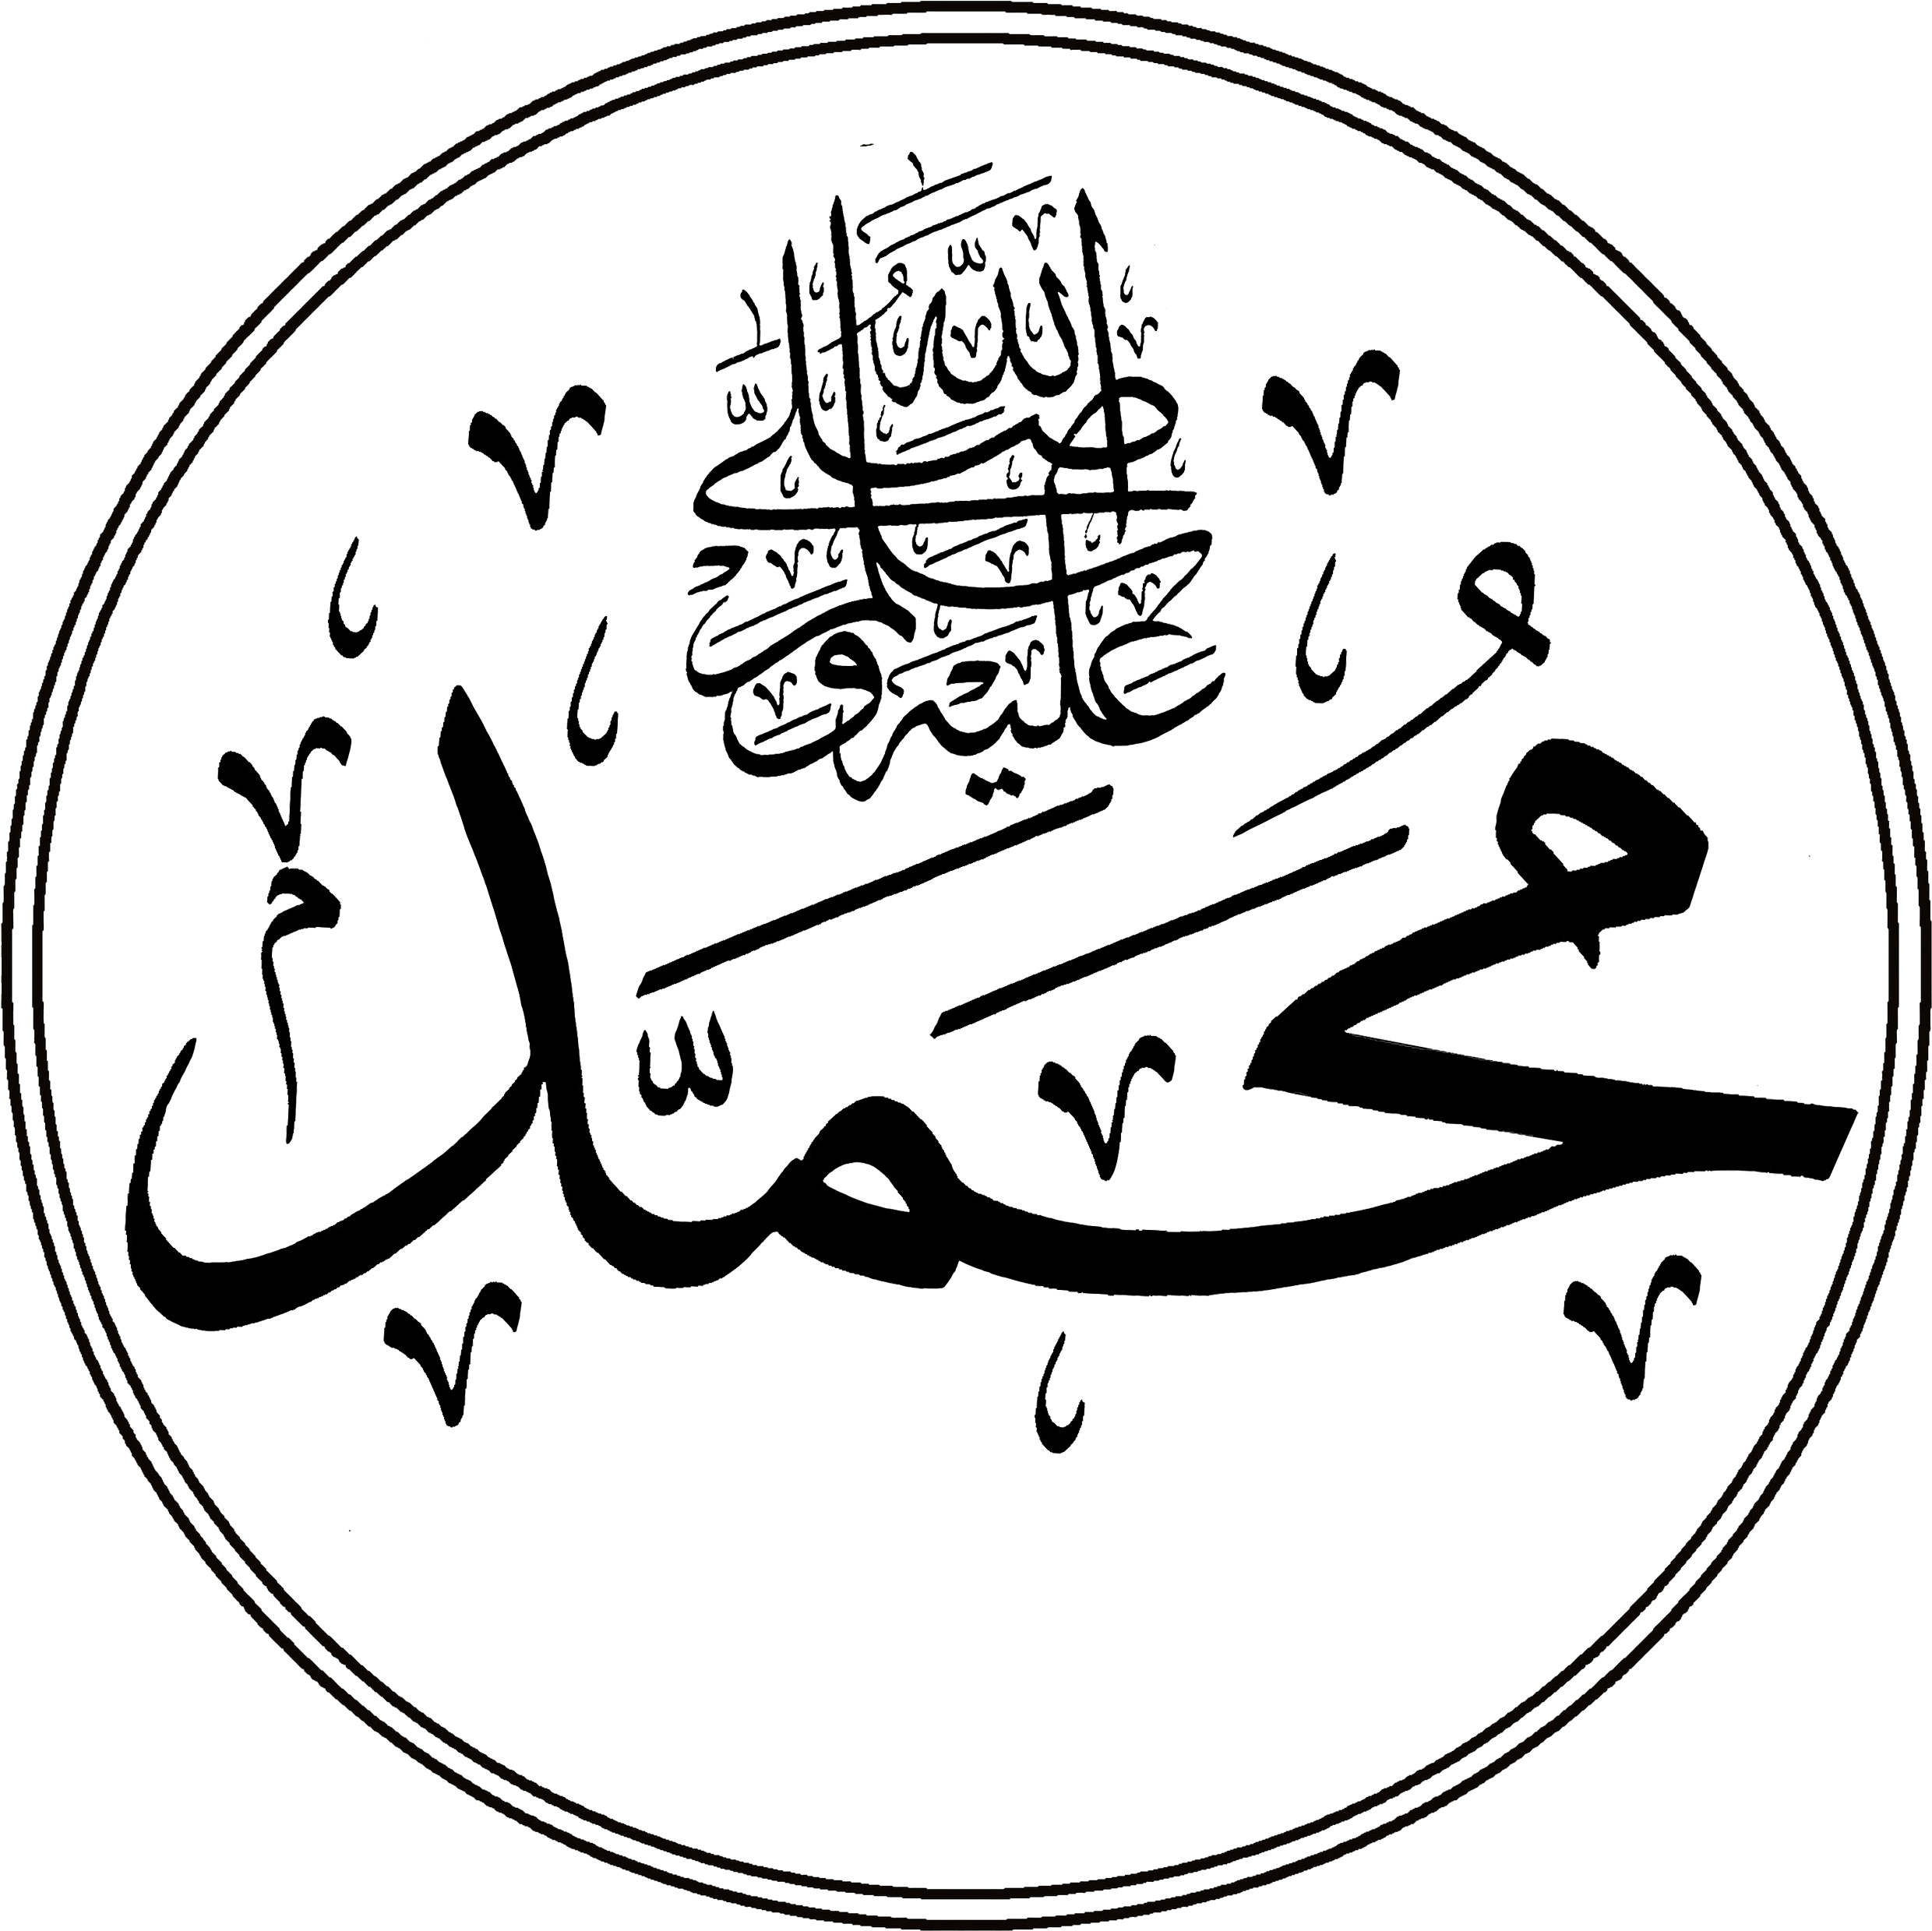 Имя пророка Мухаммеда на арабском. Арабские символы пророк Мухаммед. Пророк Мухаммед на арабском языке. Пророк Мухаммед надпись на арабском.